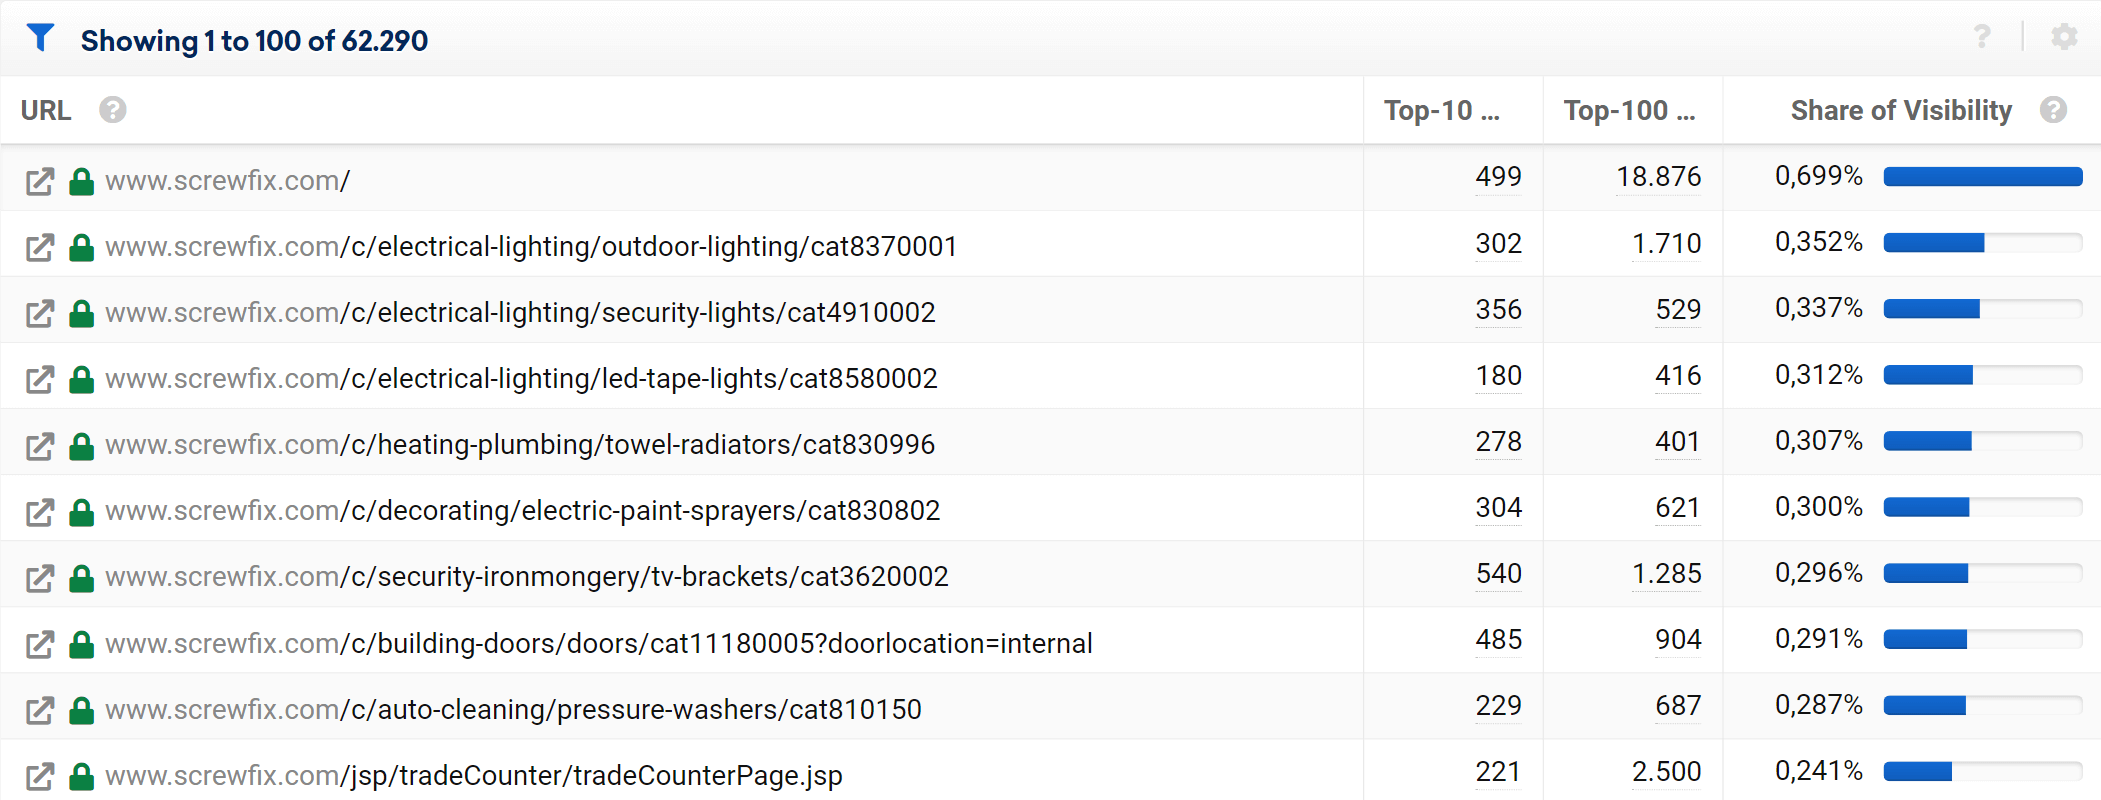 Most successful URLs of screwfix.com